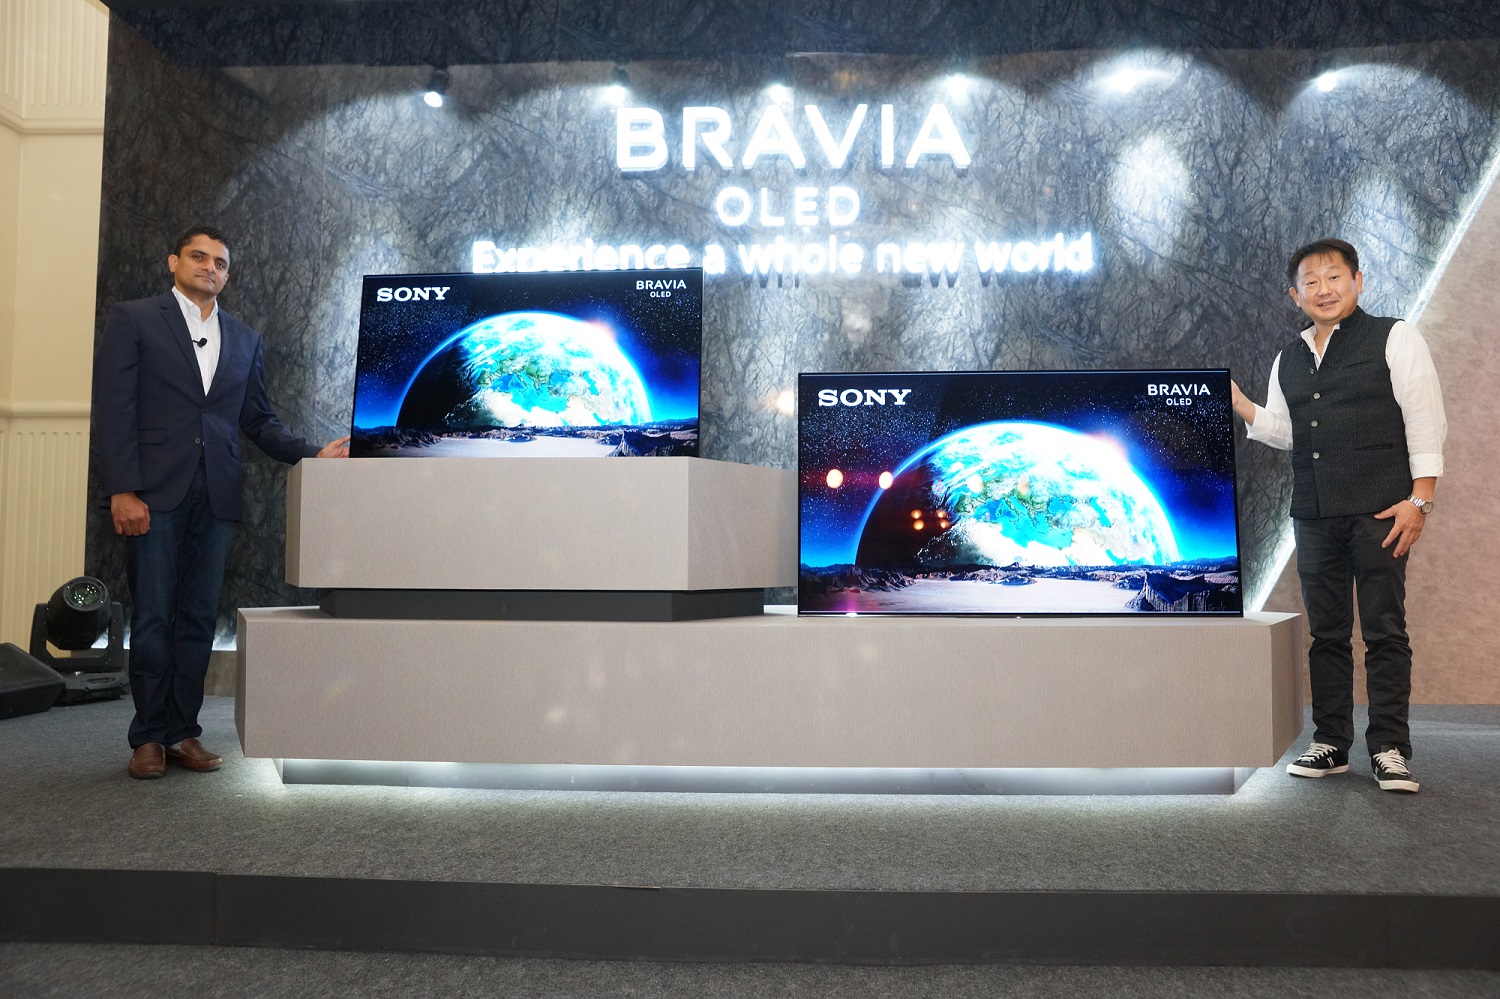 Televisores Sony Bravia OLED A1 lanzados con diseño de pizarra, 4K HDR y audio acústico